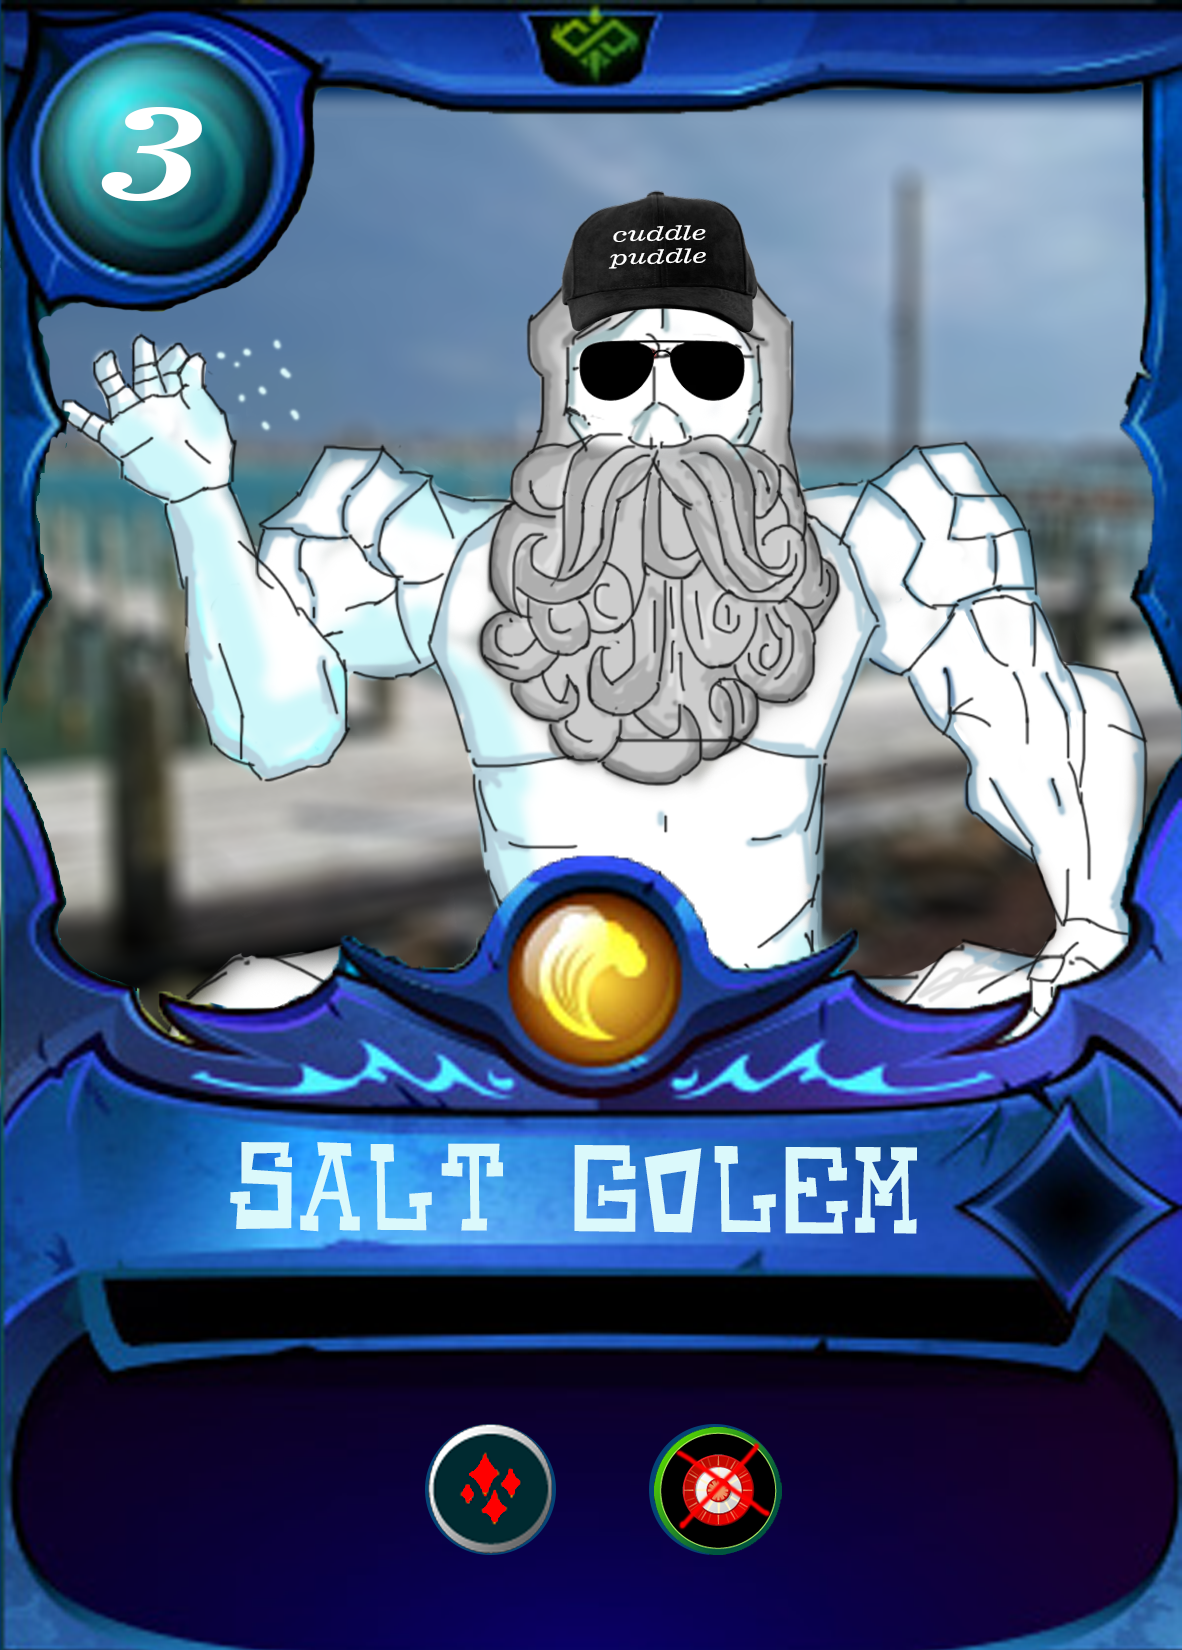 SALT GOLEM